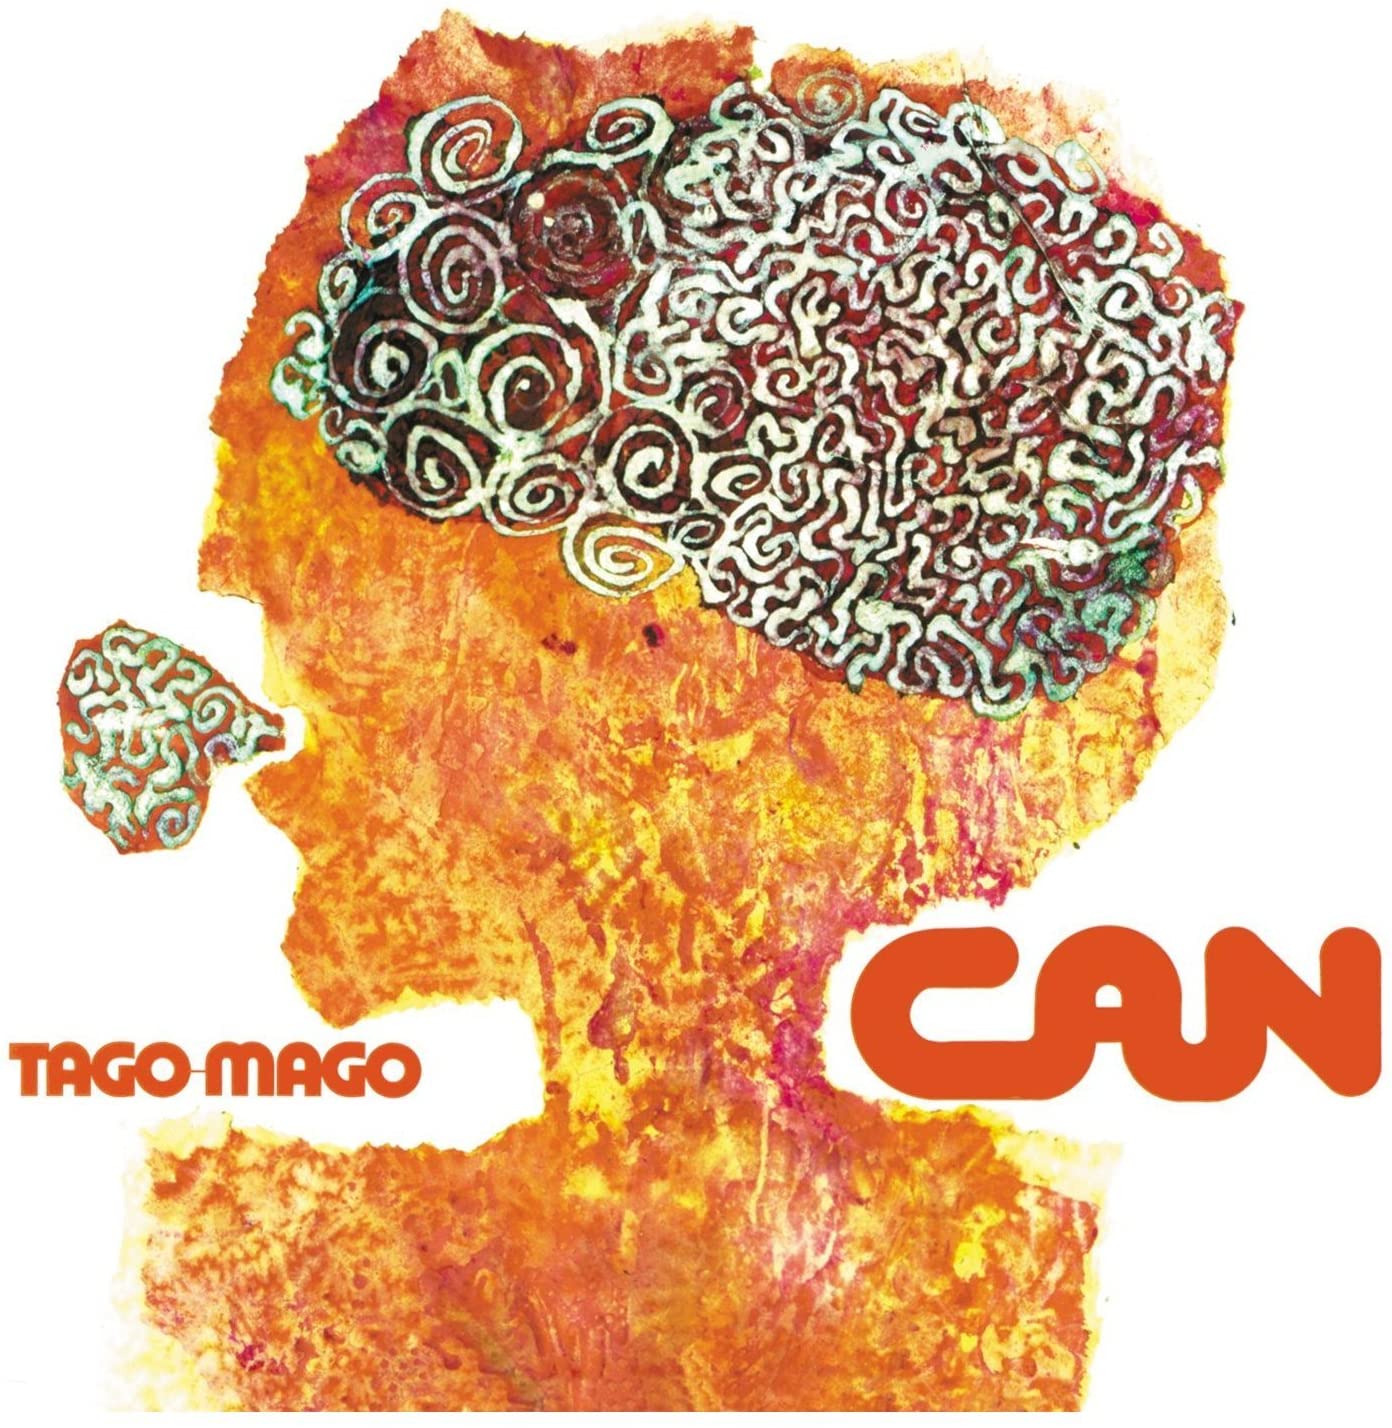 Tago Mago | Can